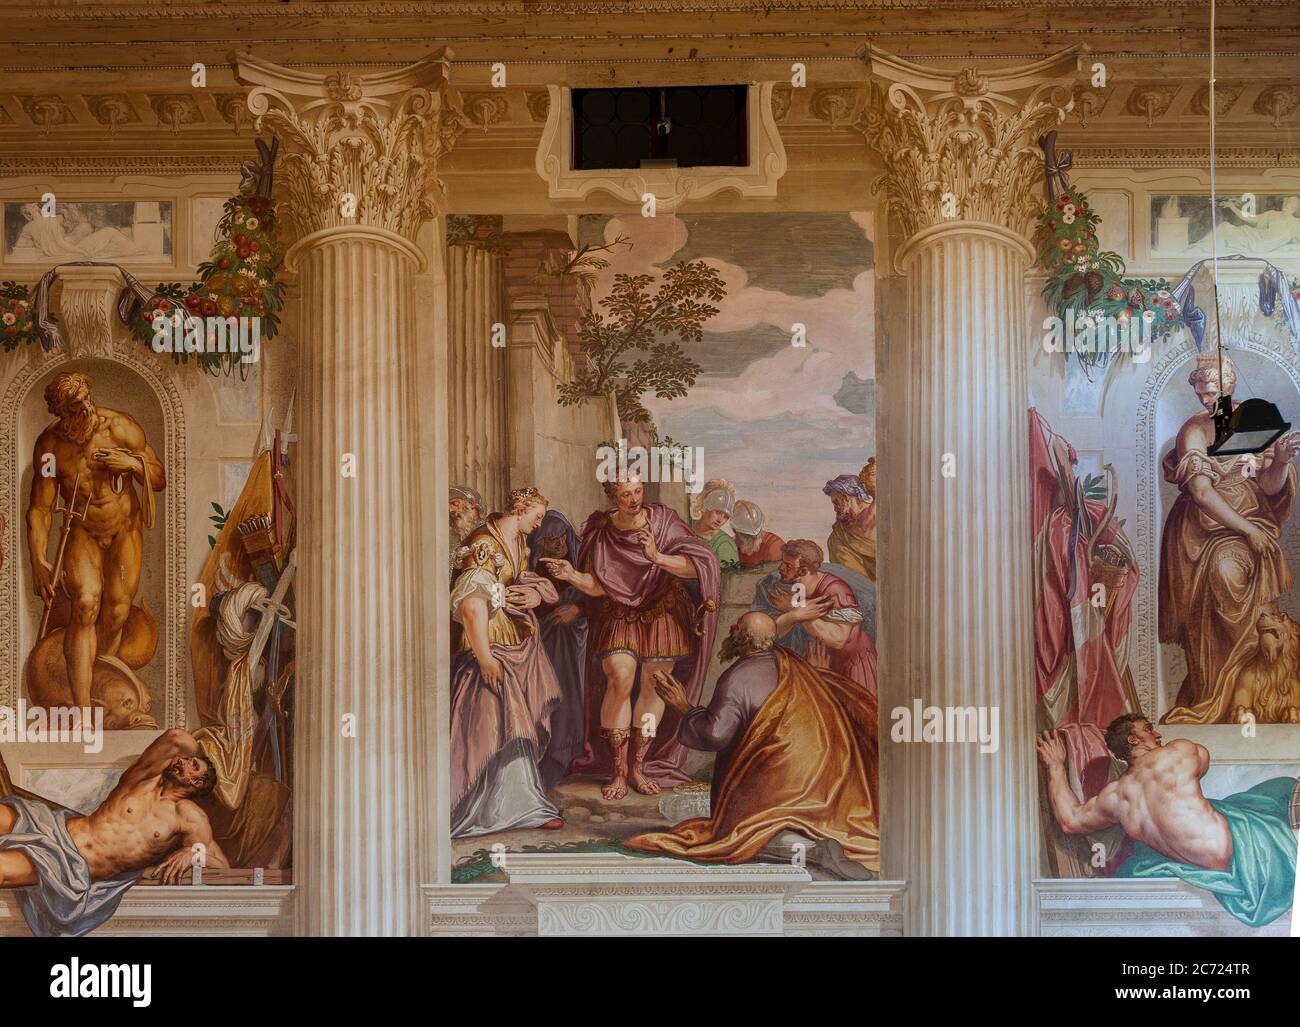 Italie Veneto Fanzolo - Villa Emo architecte Andrea Palladio - le grand hall - fresques de Battista Zelotti Banque D'Images